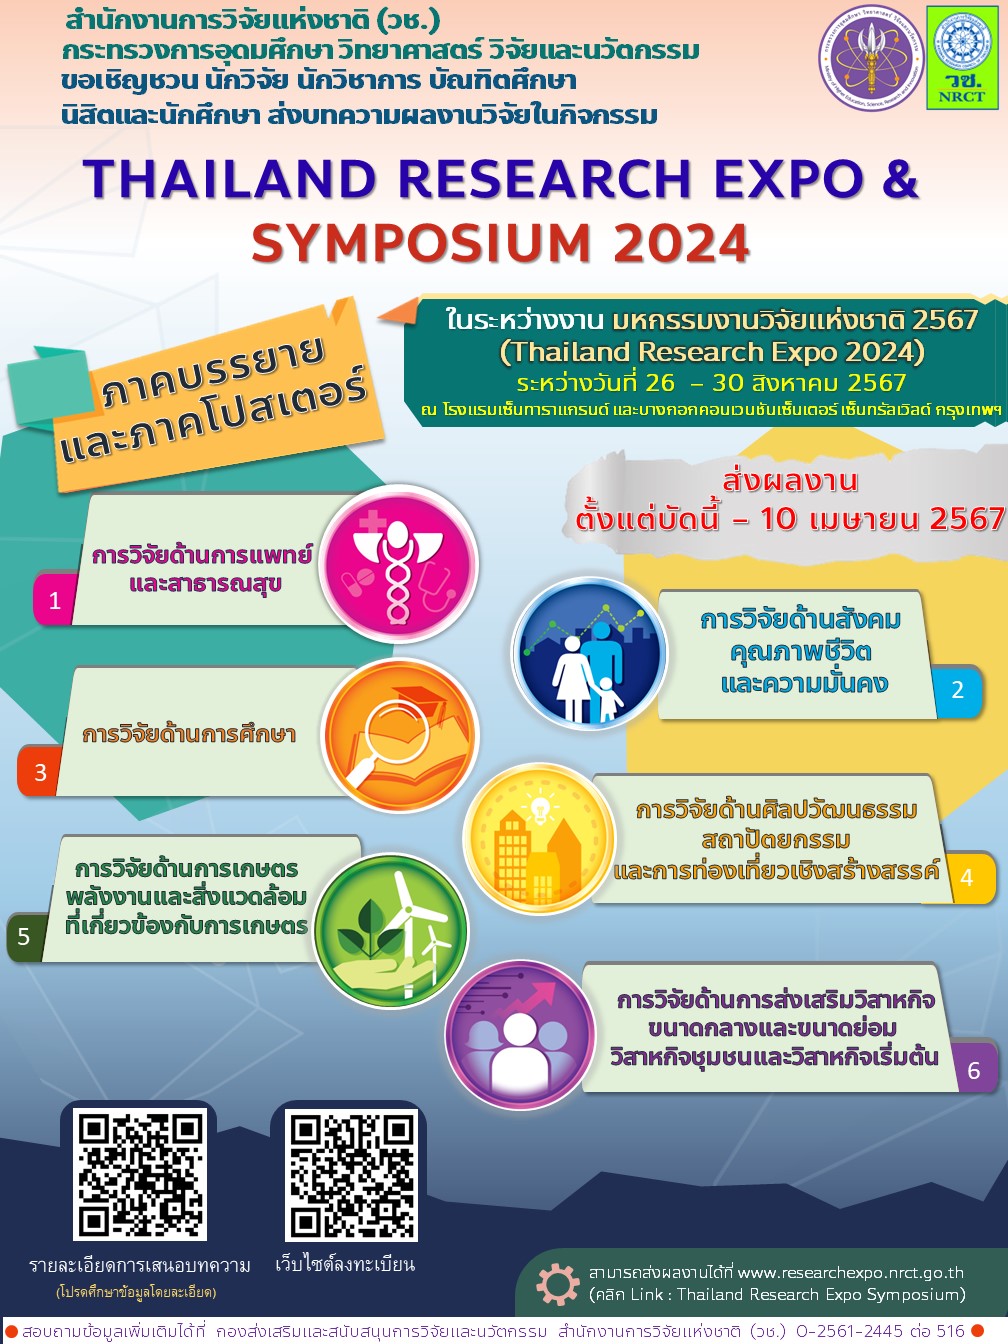 ประชาสัมพันธ์เชิญส่งบทความผลงานวิจัยเข้าร่วมนำเสนอในกิจกรรม Thailand Research Expo & Symposium 2024